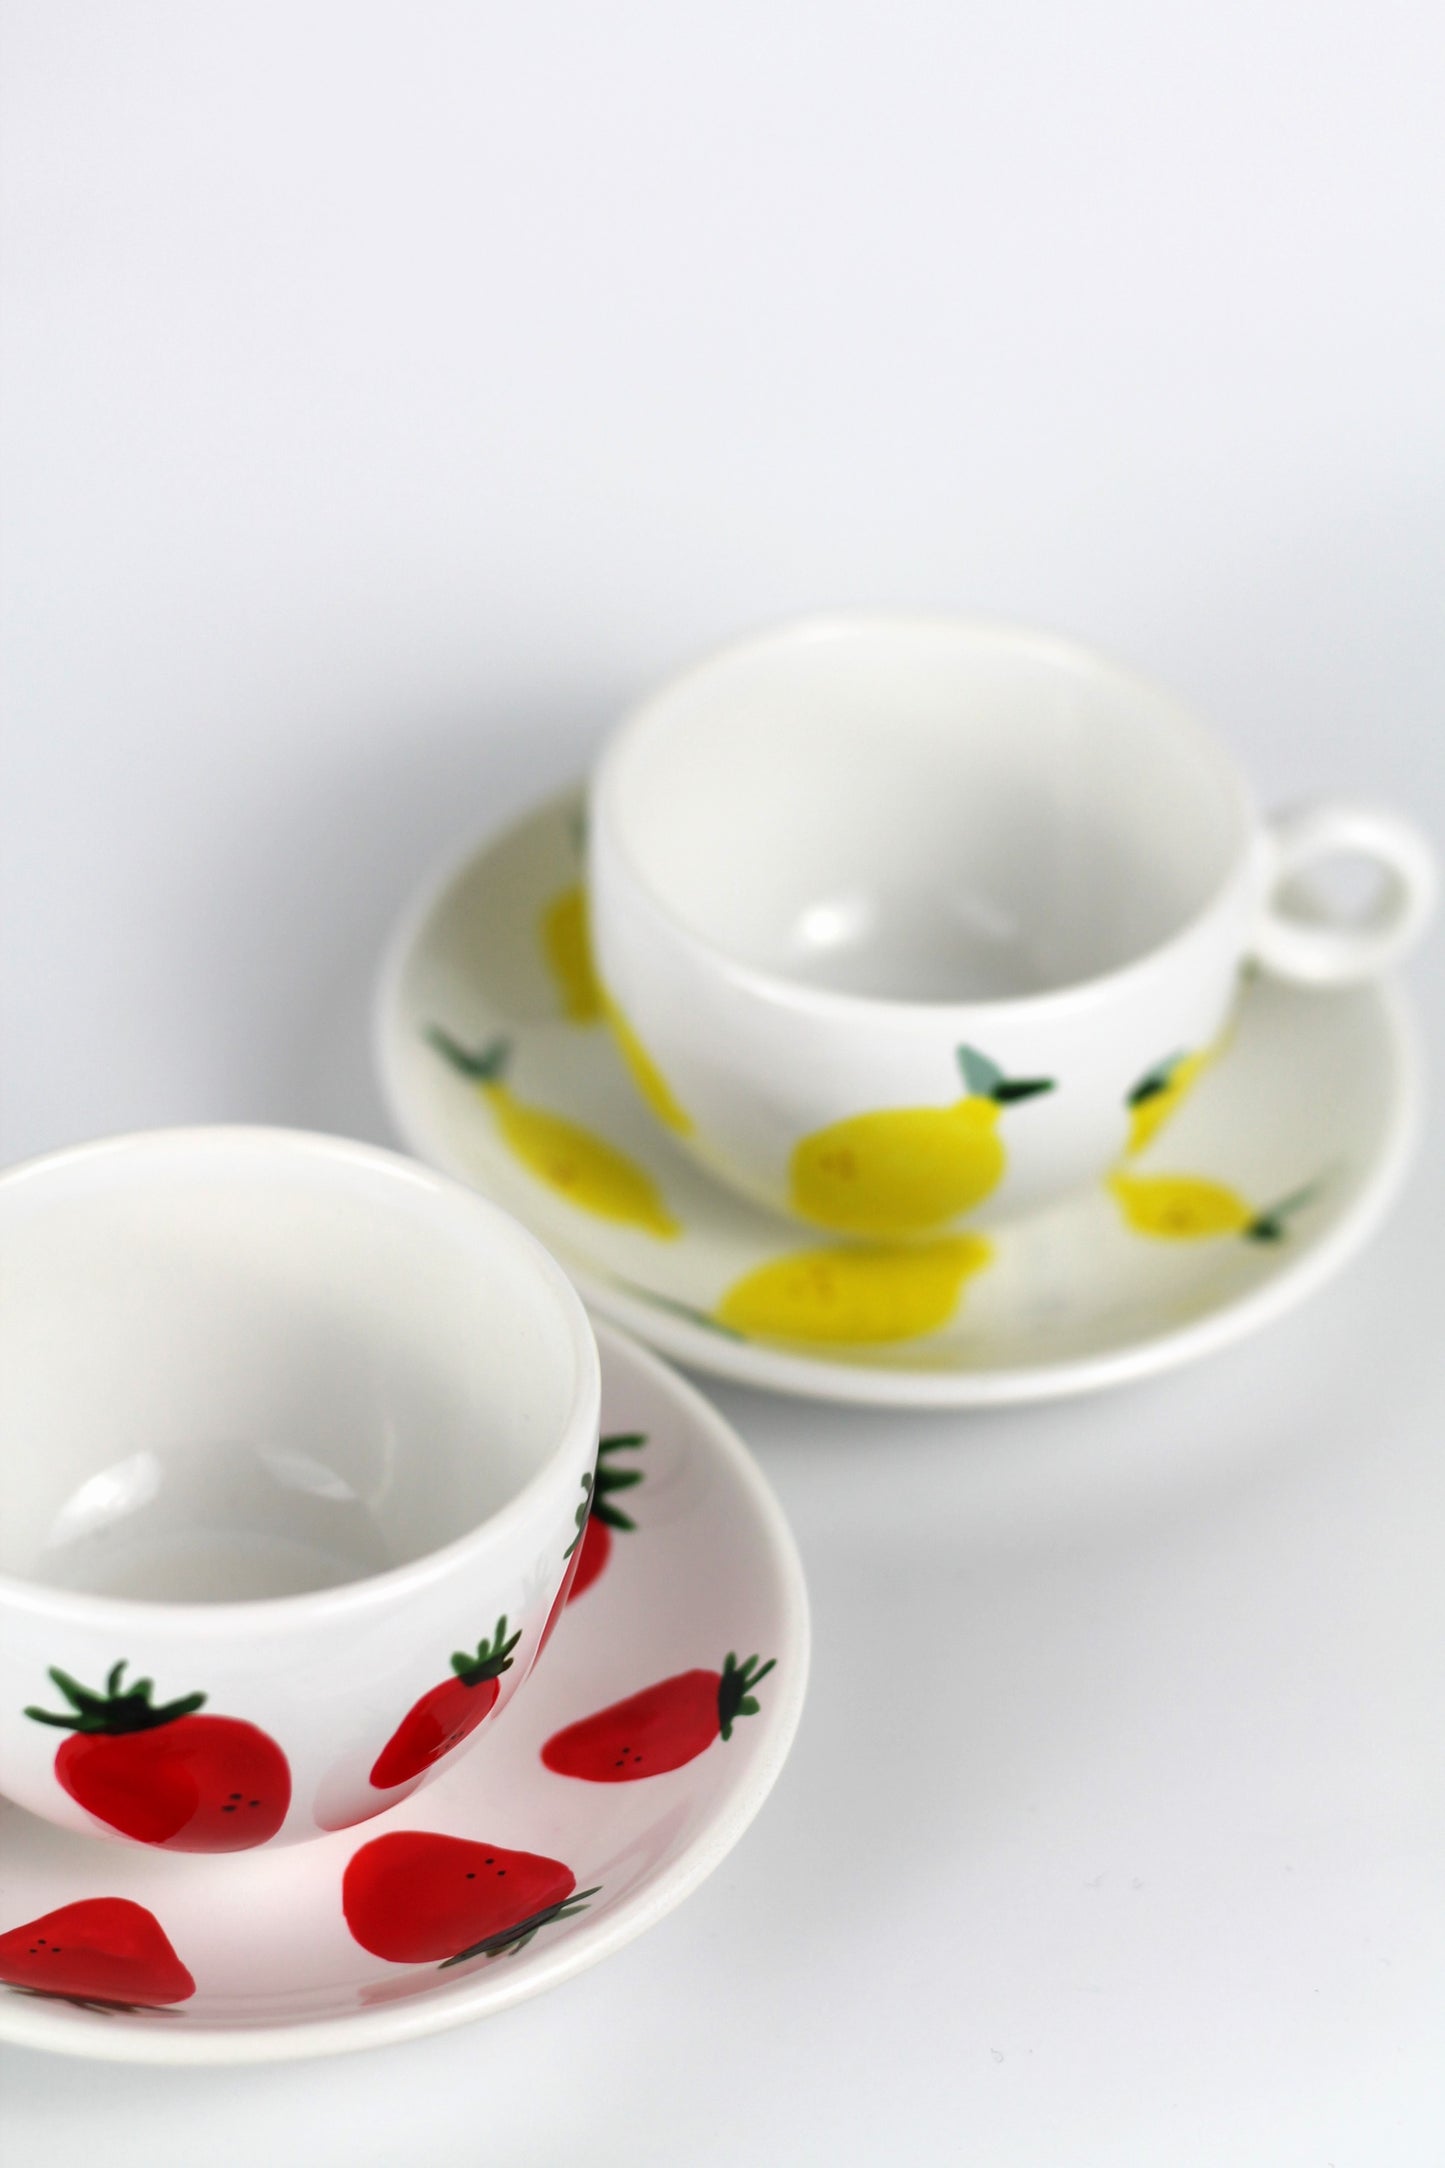 Porcelain FRUITY espresso mug and coaster set - Lemon